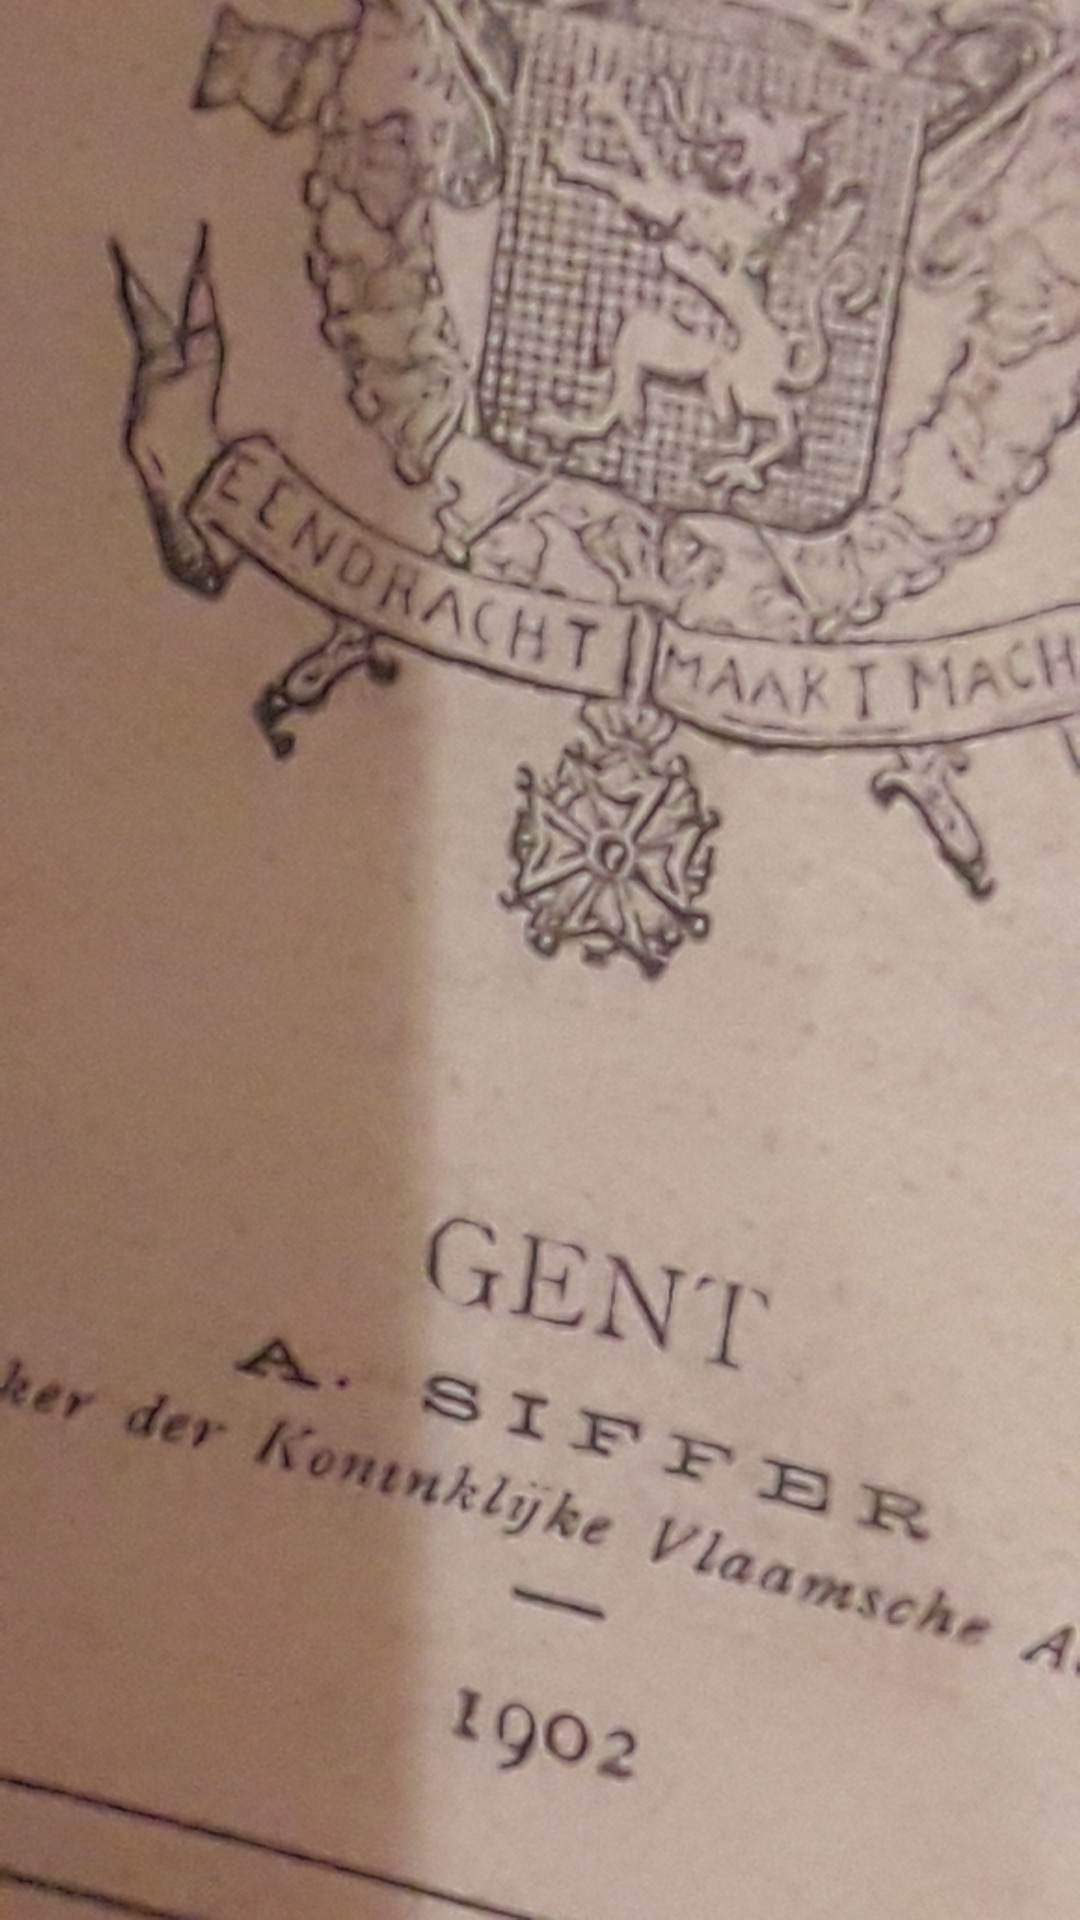 Germaansche Heldenleer - M. Brants 1902 - 304 blz / ZEER ZELDZAAM !!